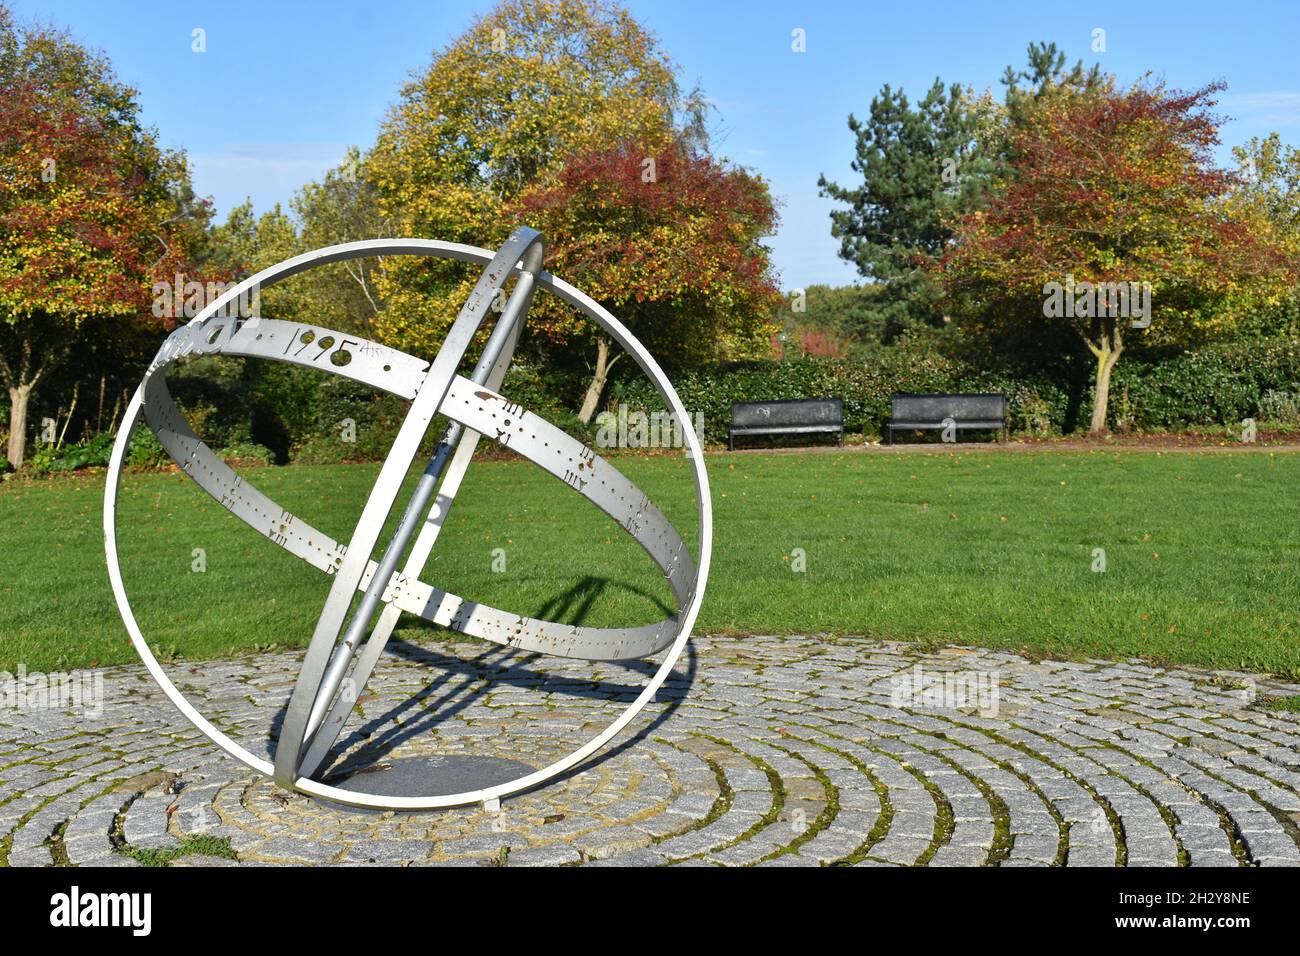 La 'sfera Armillary' una meridiana di Justin Tunley a Campbell Park, Milton Keynes, che celebra il decimo anniversario della MK Housing Association. Foto Stock